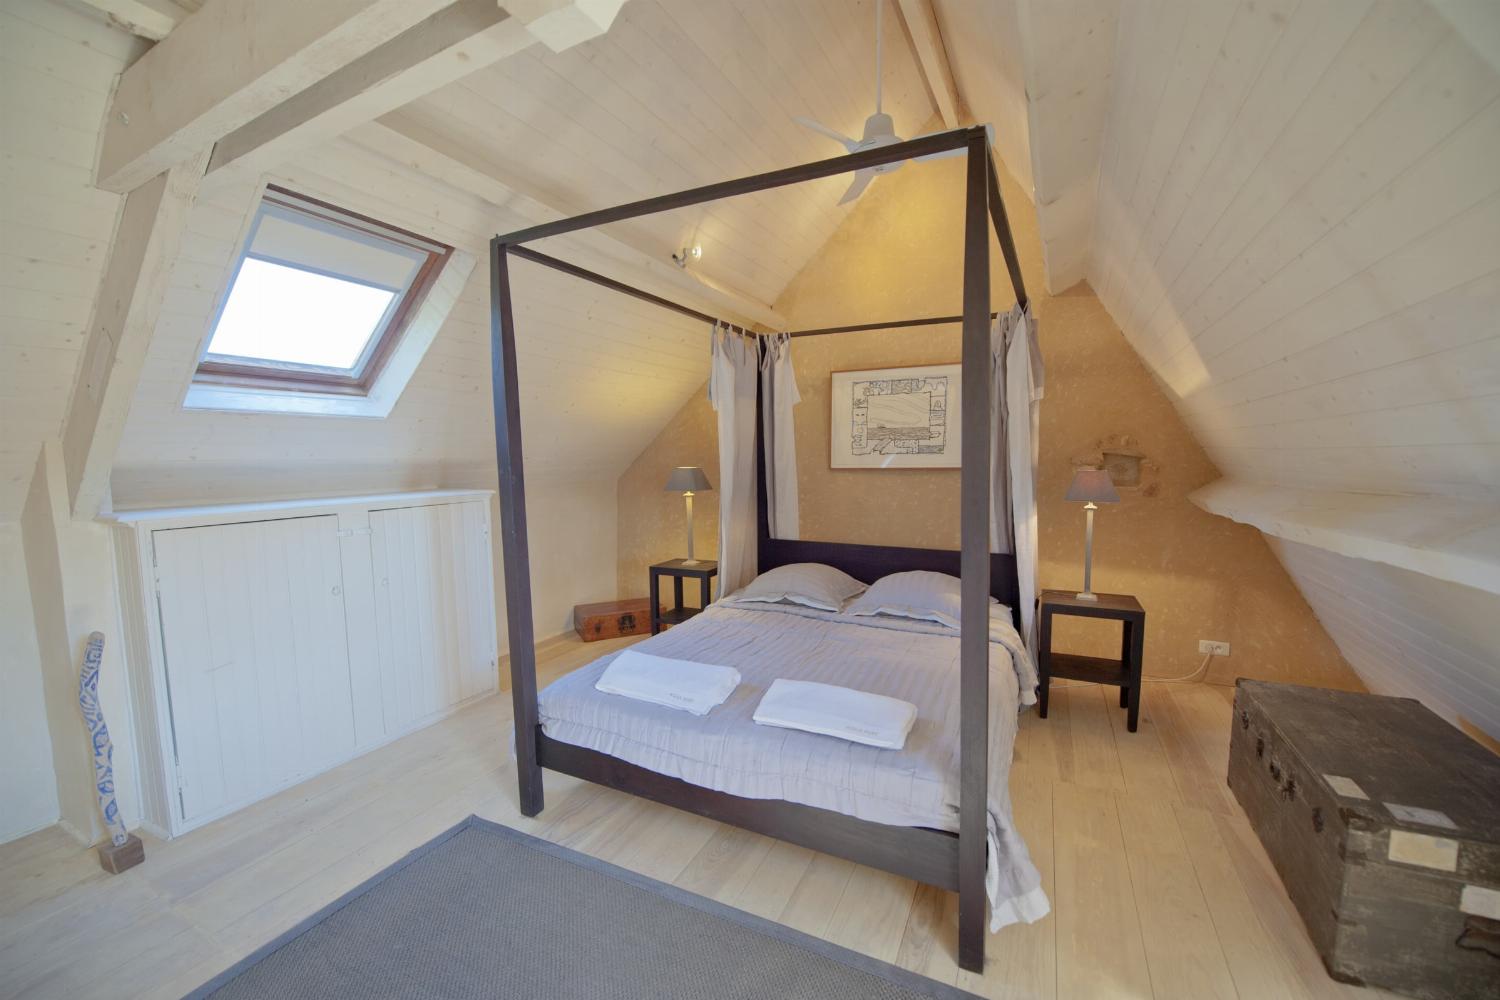 Bedroom | Rental home in Dordogne